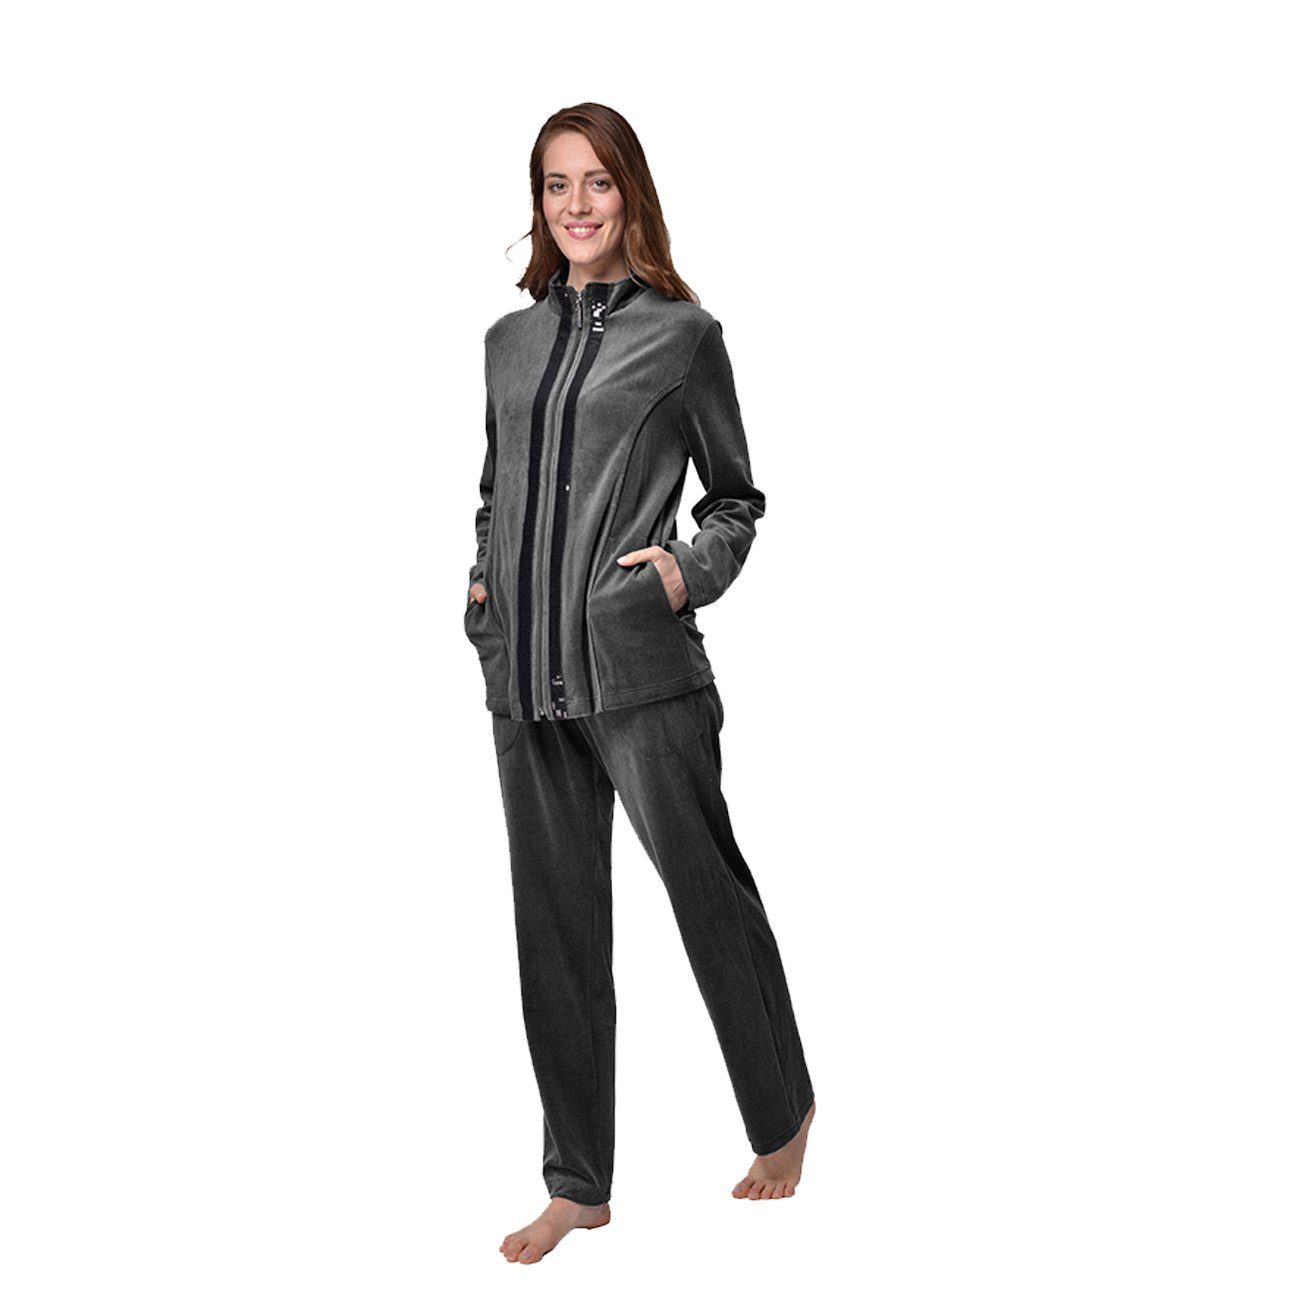 RAIKOU Hausanzug Damen Velours Nicki-Anzug Freizeitanzug Hausanzug (2 tlg) zwei glänzende, schwarze Paillettenreihen Grau Melange